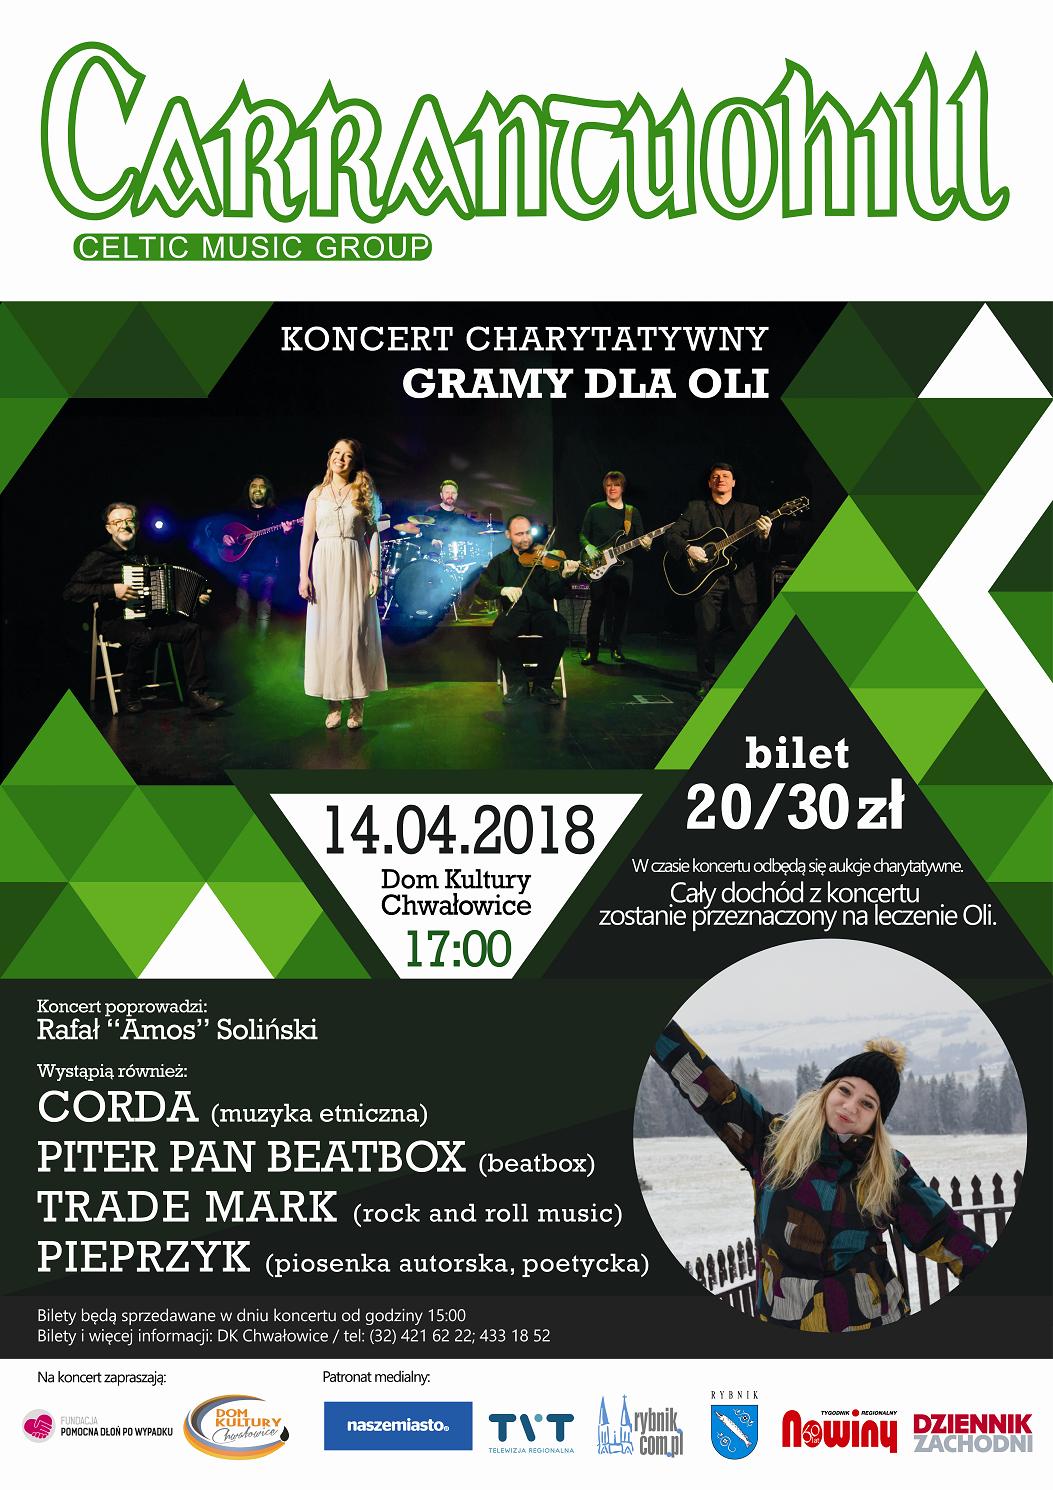 Gramy Dla Oli - Koncert Cnarytatywny w sobotę 14 kwietnia 2018 r. o godz. 17.00 w Domu Kultury Chwałowice.